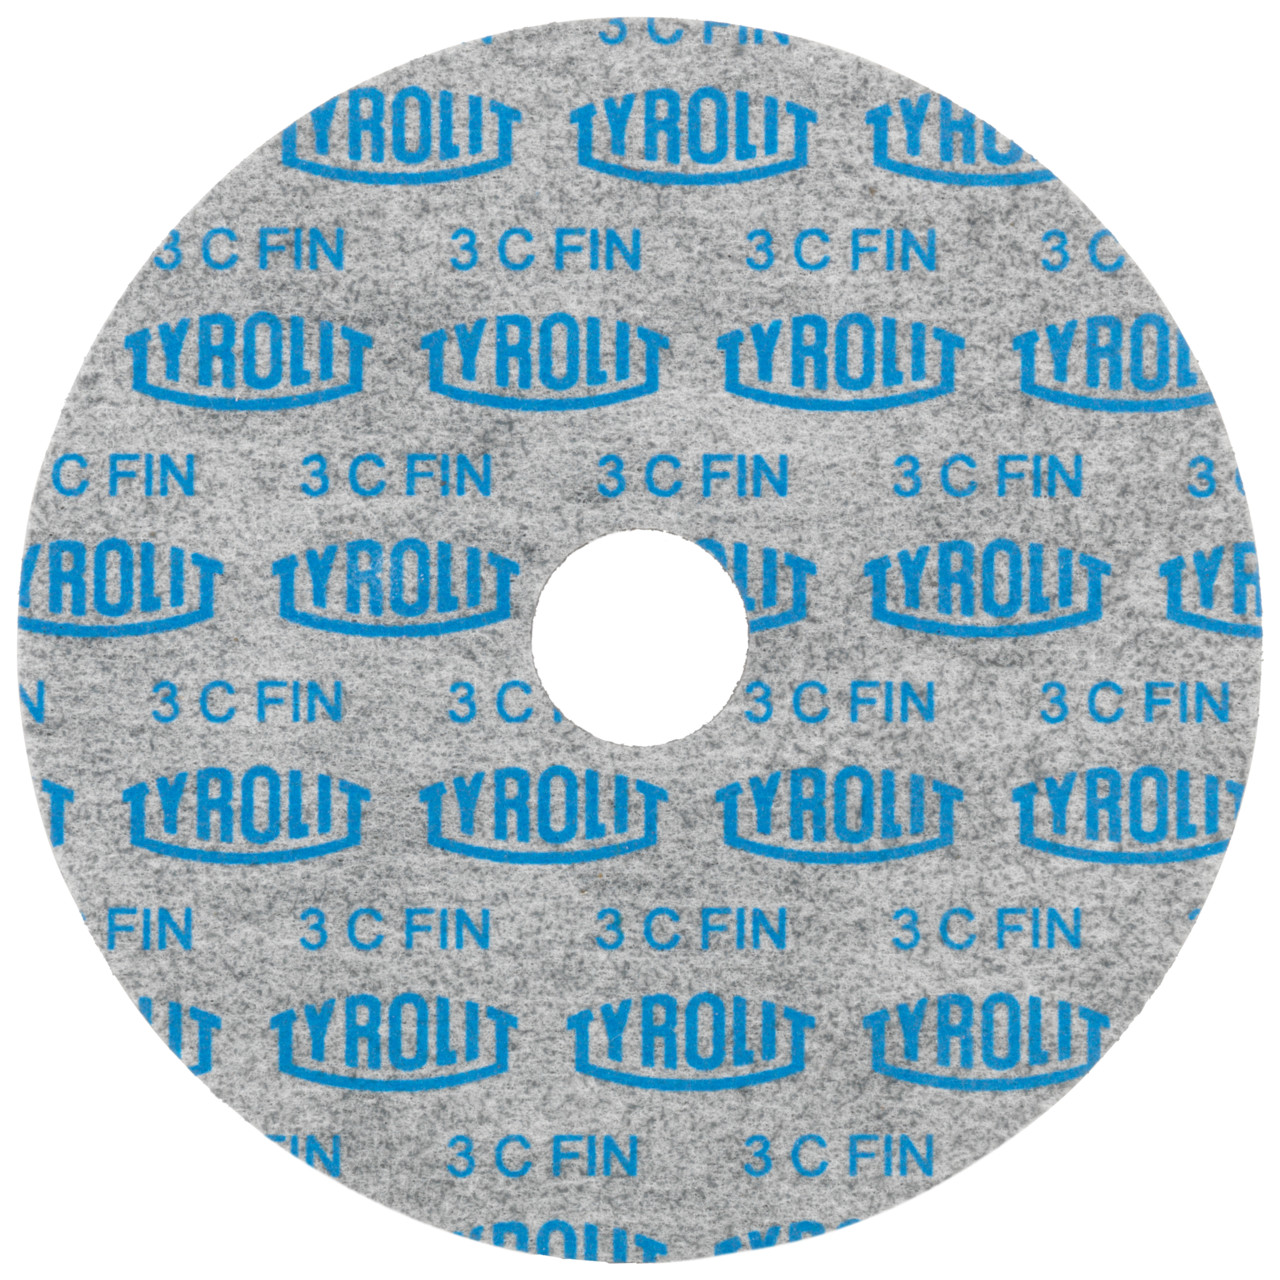 Tyrolit Discos compactos prensados DxDxH 152x3x25,4 De uso universal, 6 C FEIN, forma: 1, Art. 34190210